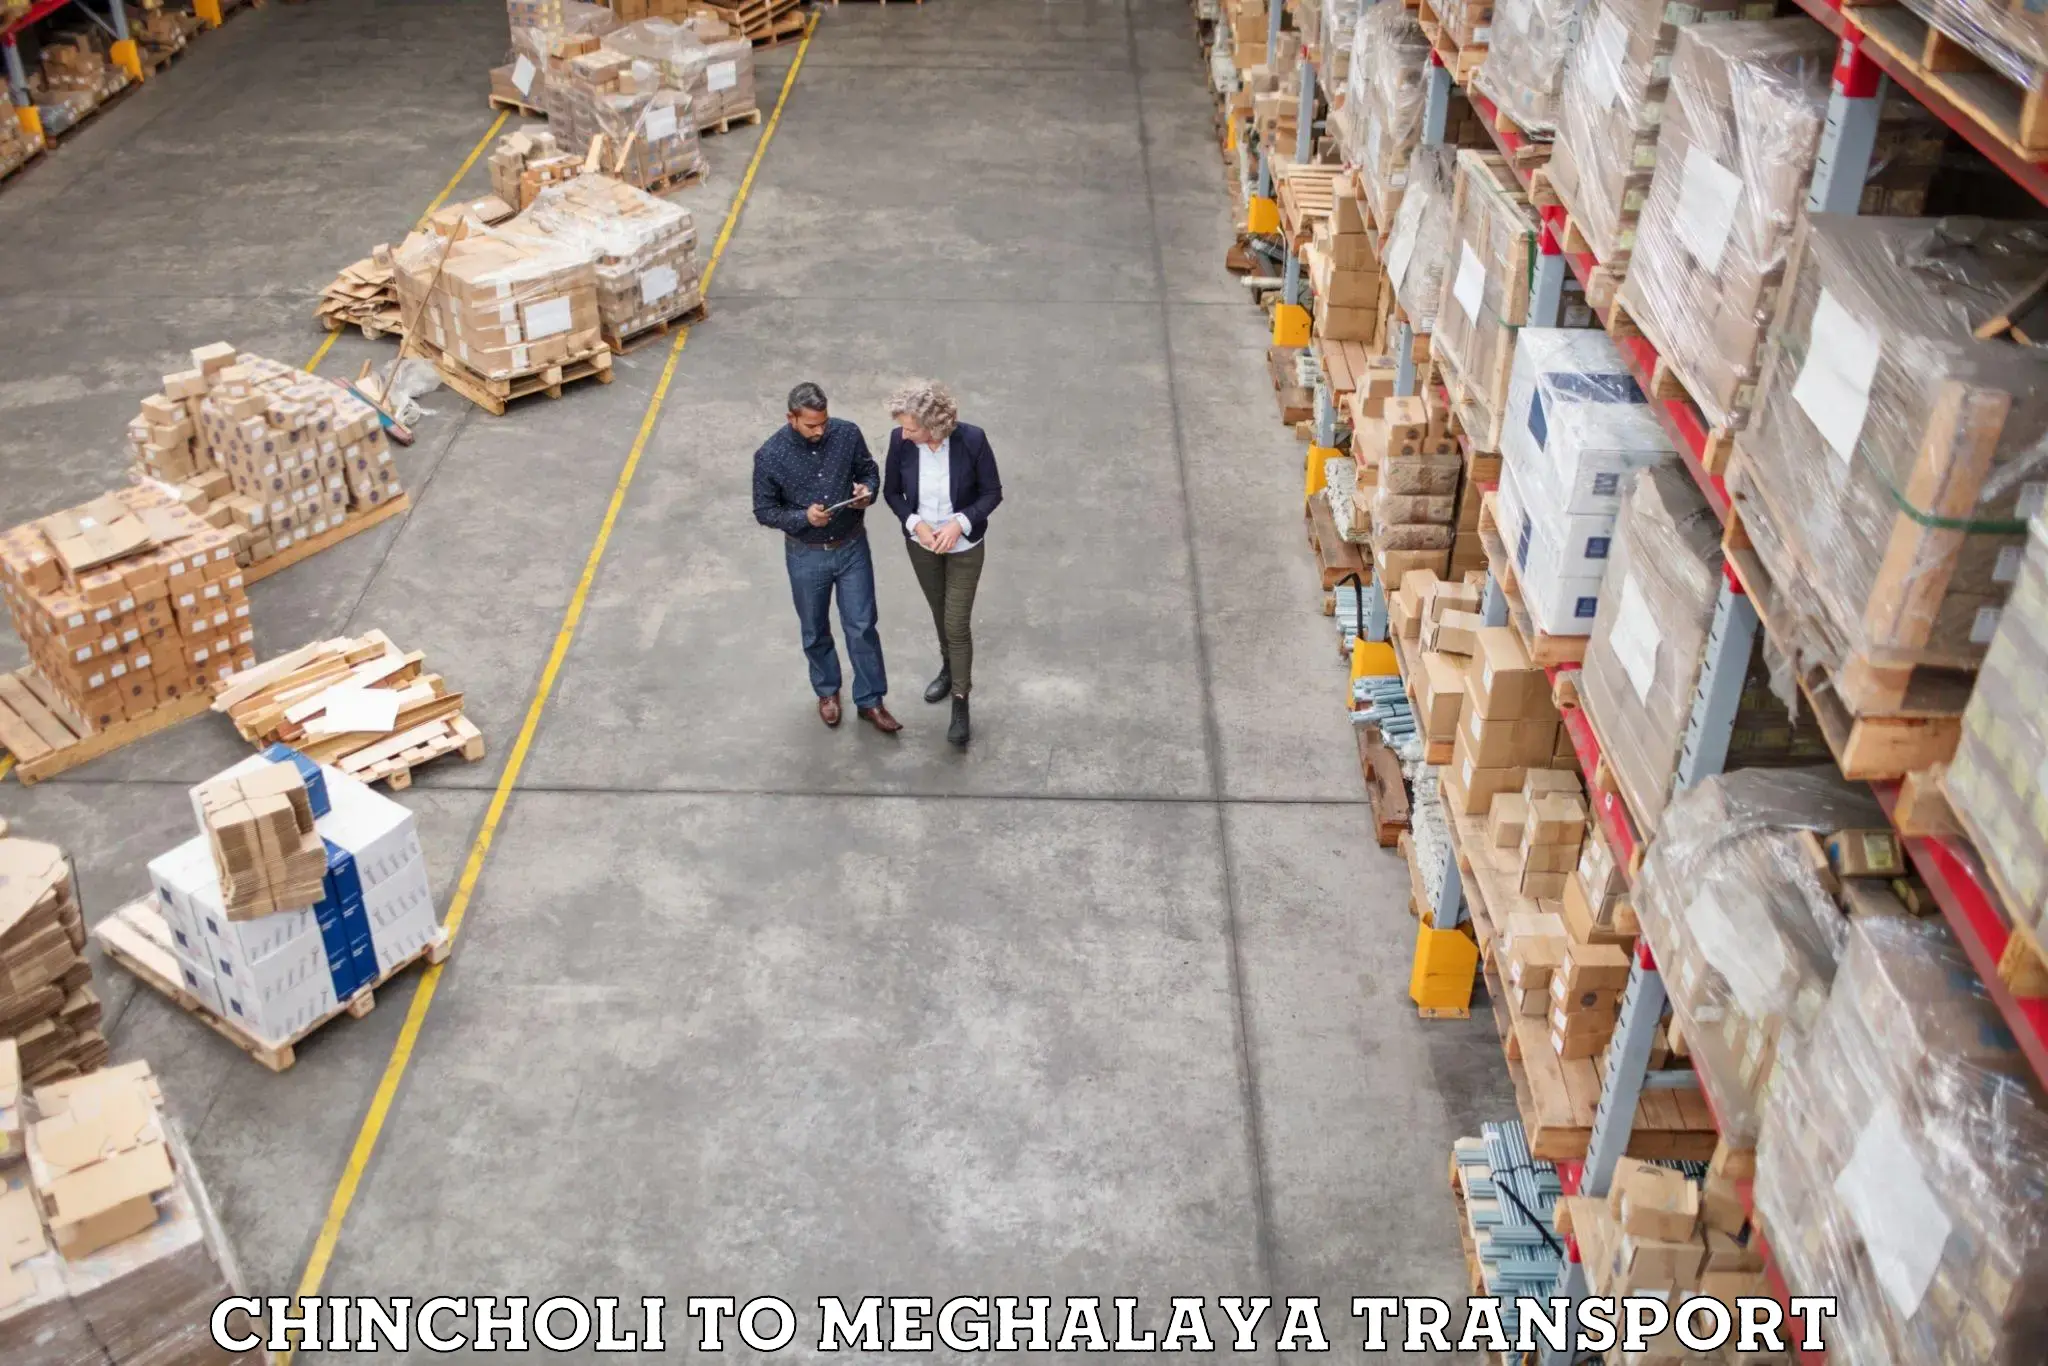 Daily transport service Chincholi to Meghalaya